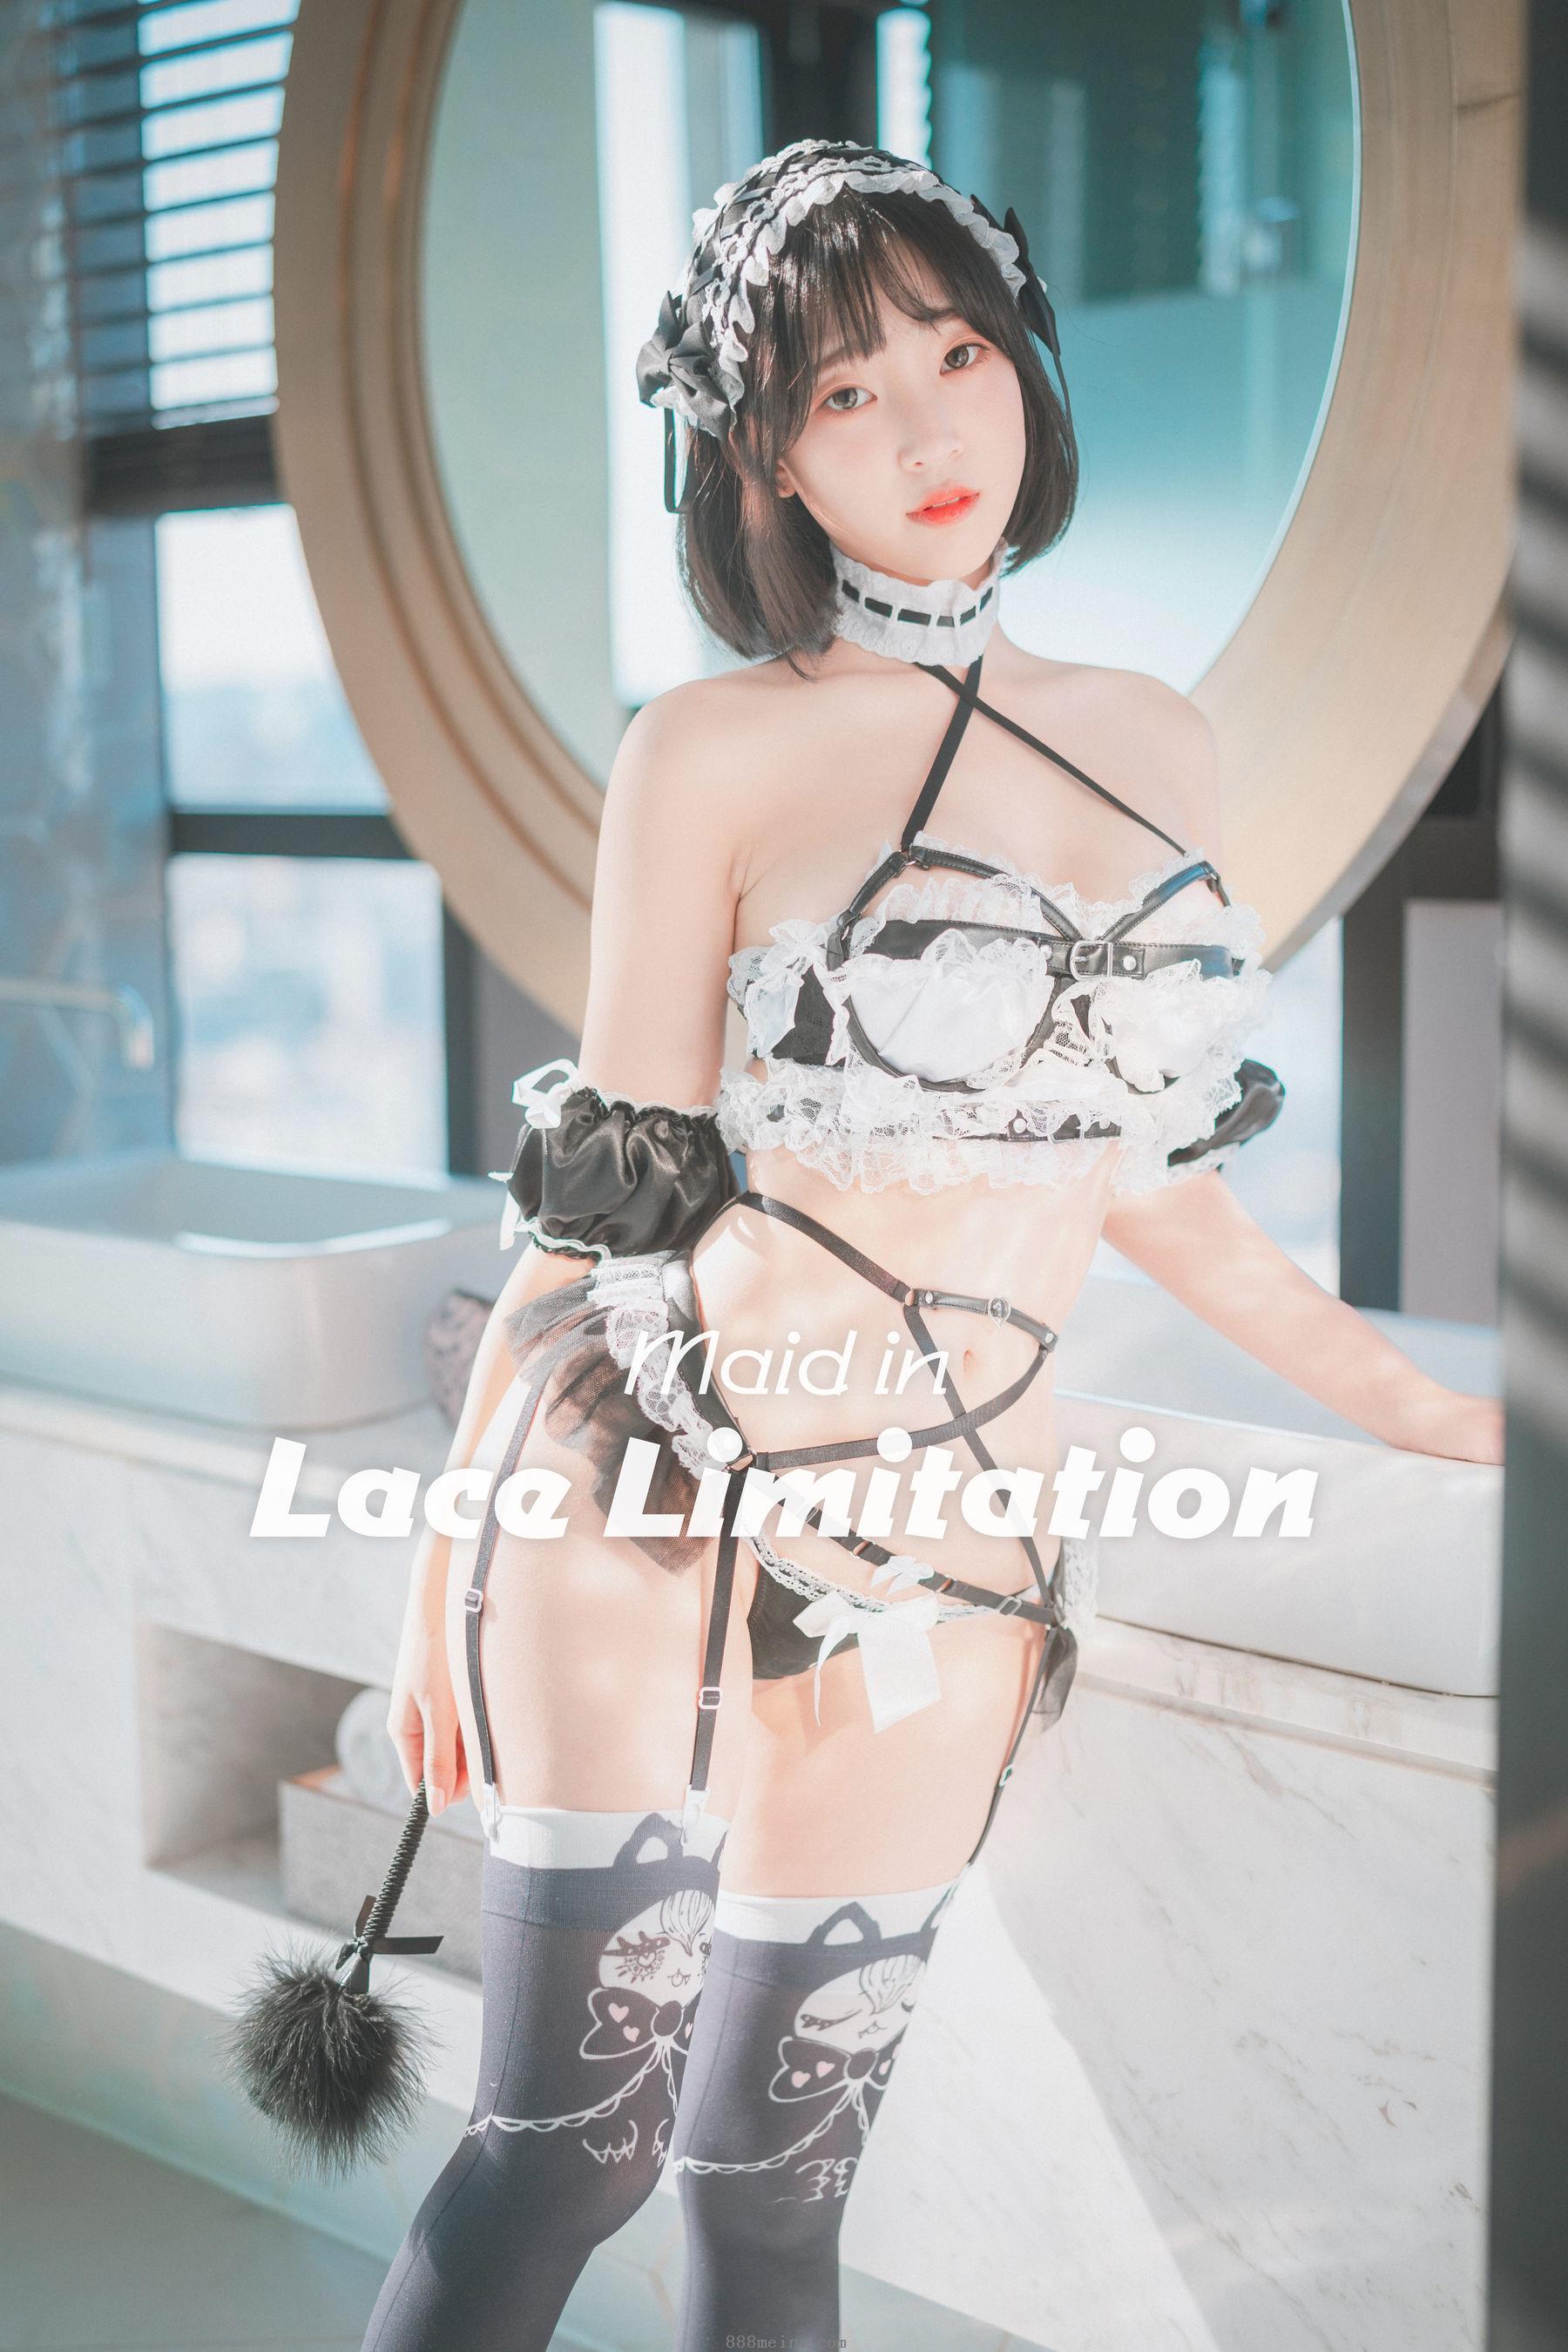 女仆 Kang Inkyung - Maid in Lace Limitation 写真套图【51P】